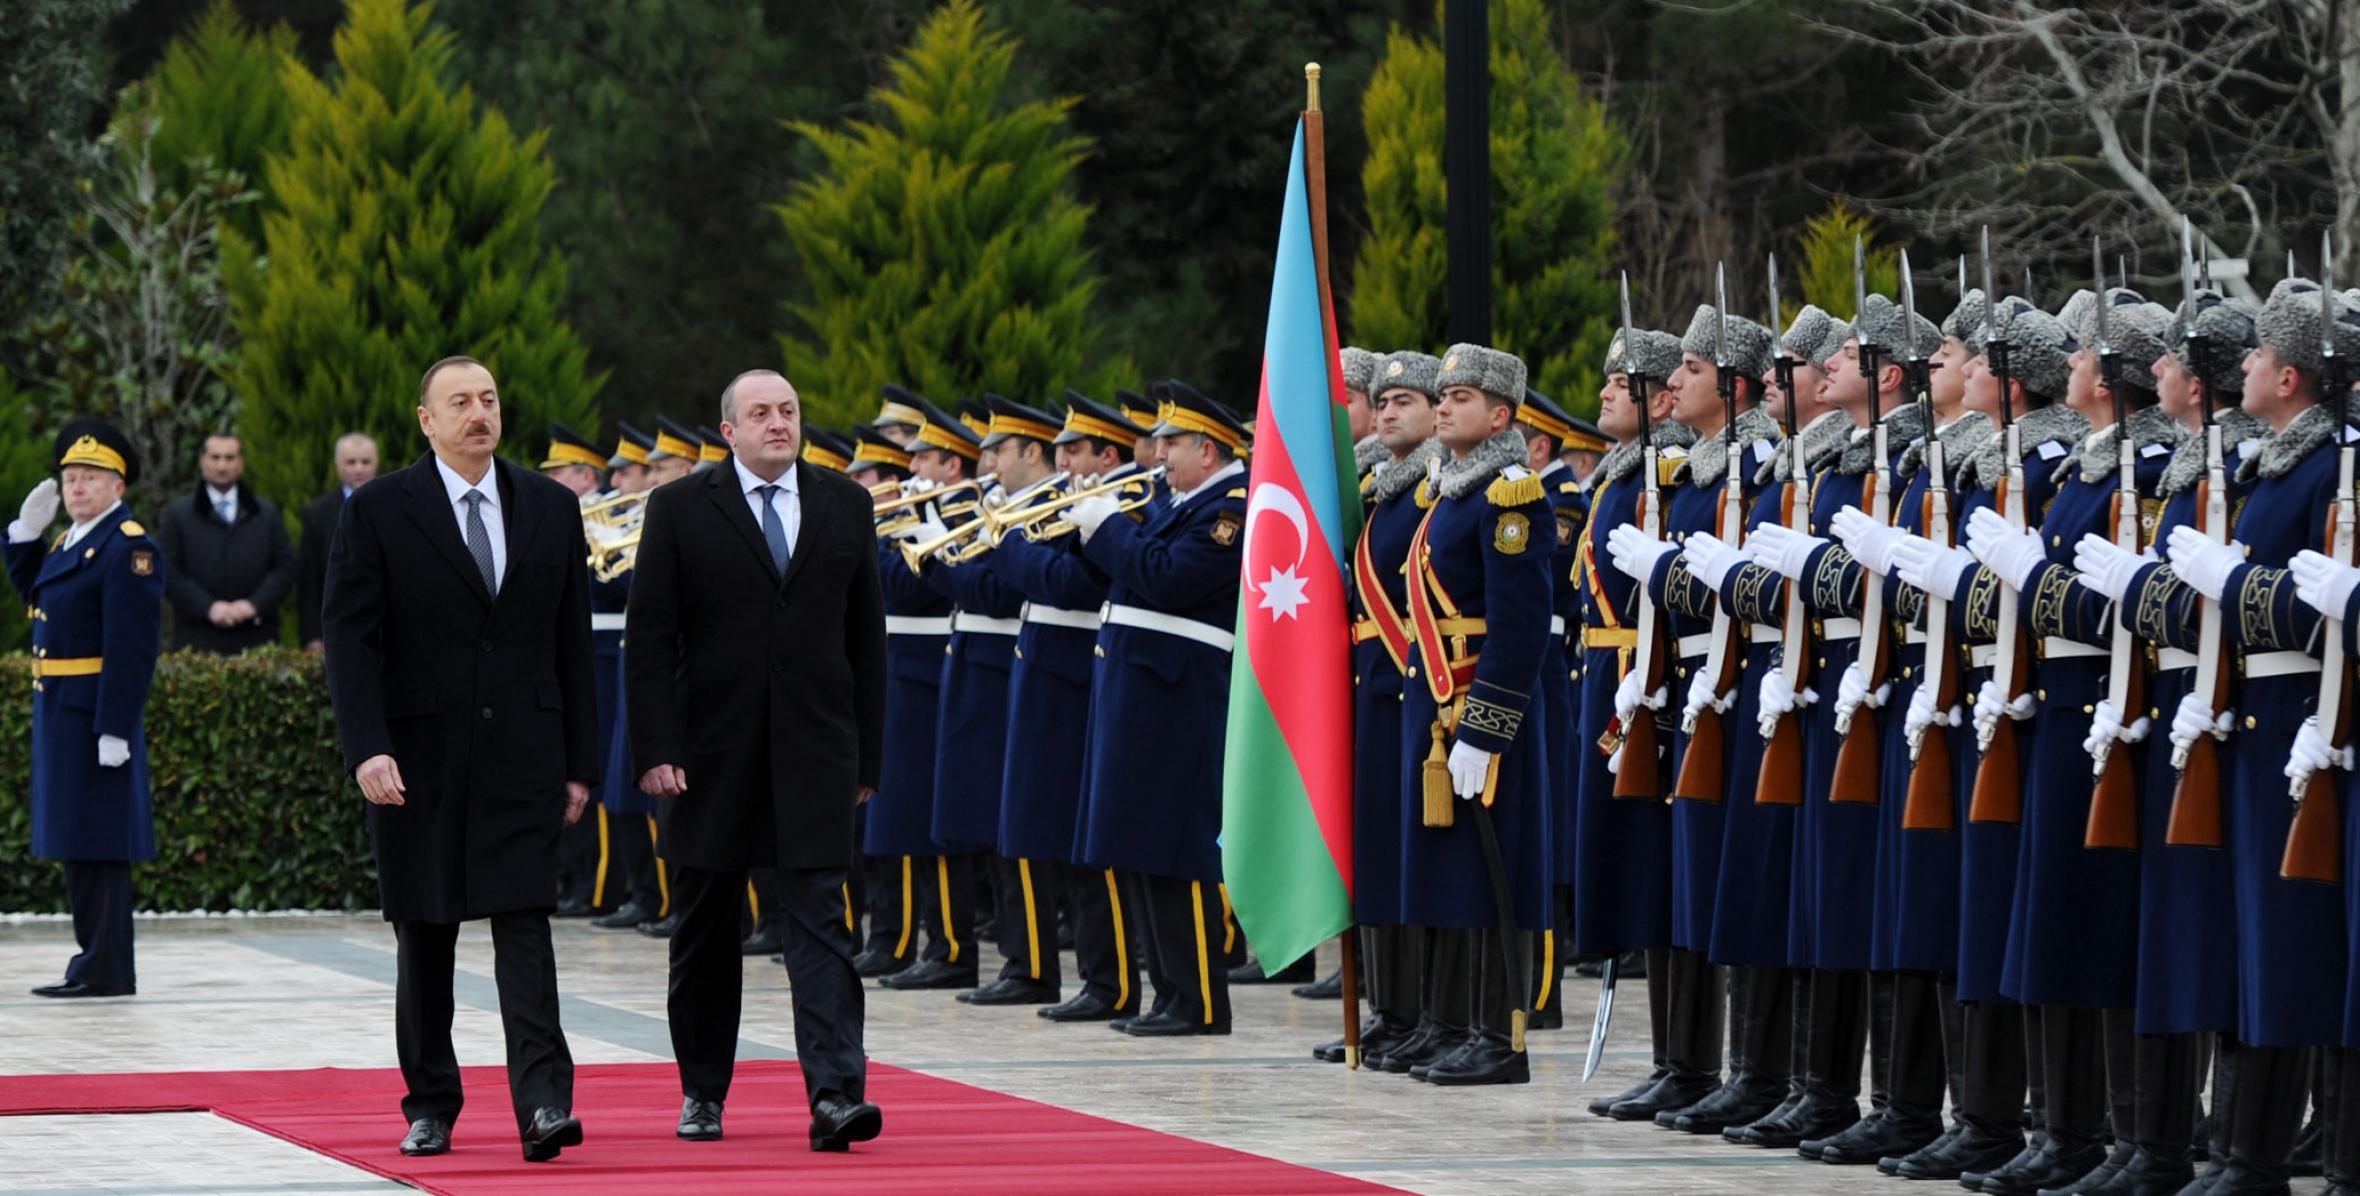 Gürcüstan Prezidenti Georgi Marqvelaşvilinin rəsmi qarşılanma mərasimi olmuşdur